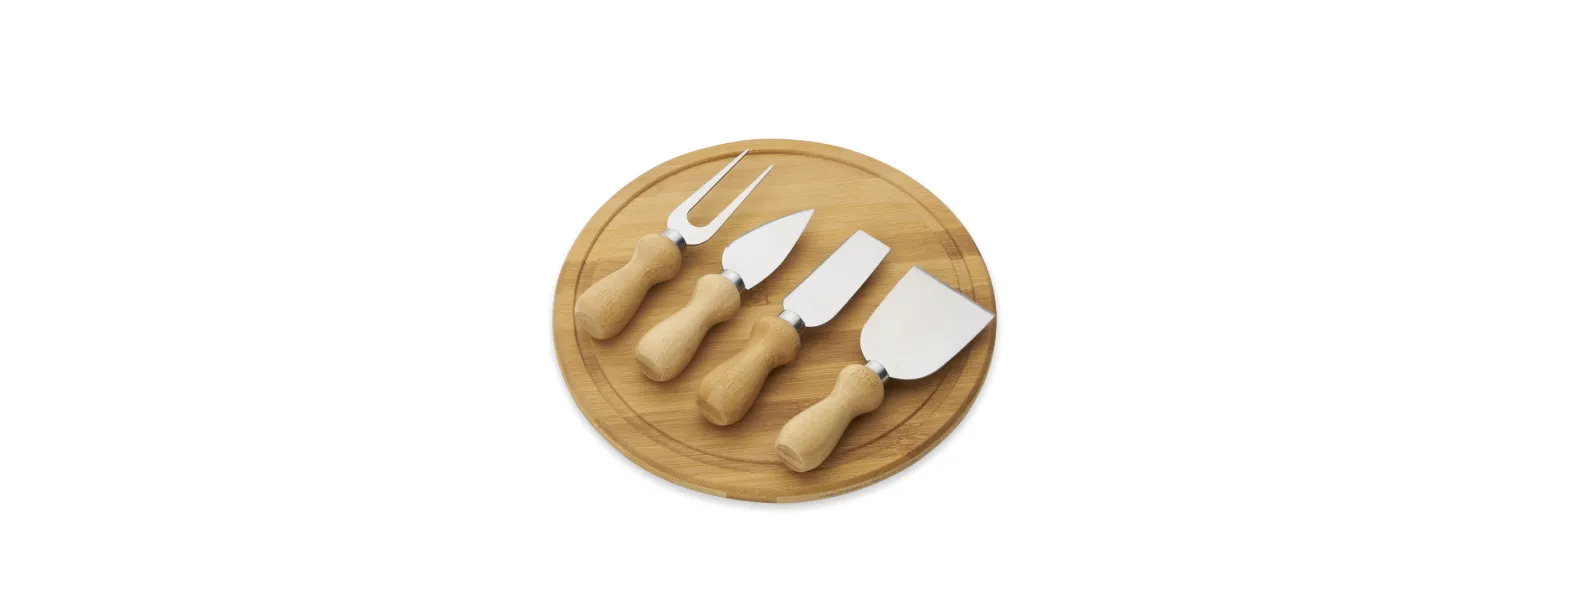 Kit para queijo. Conta com tábua redonda em bambu; duas facas, uma espátula e um garfo para queijos. Tábua confeccionada com tripla camada invertida, para dar maior durabilidade e não deformar com o passar do tempo.